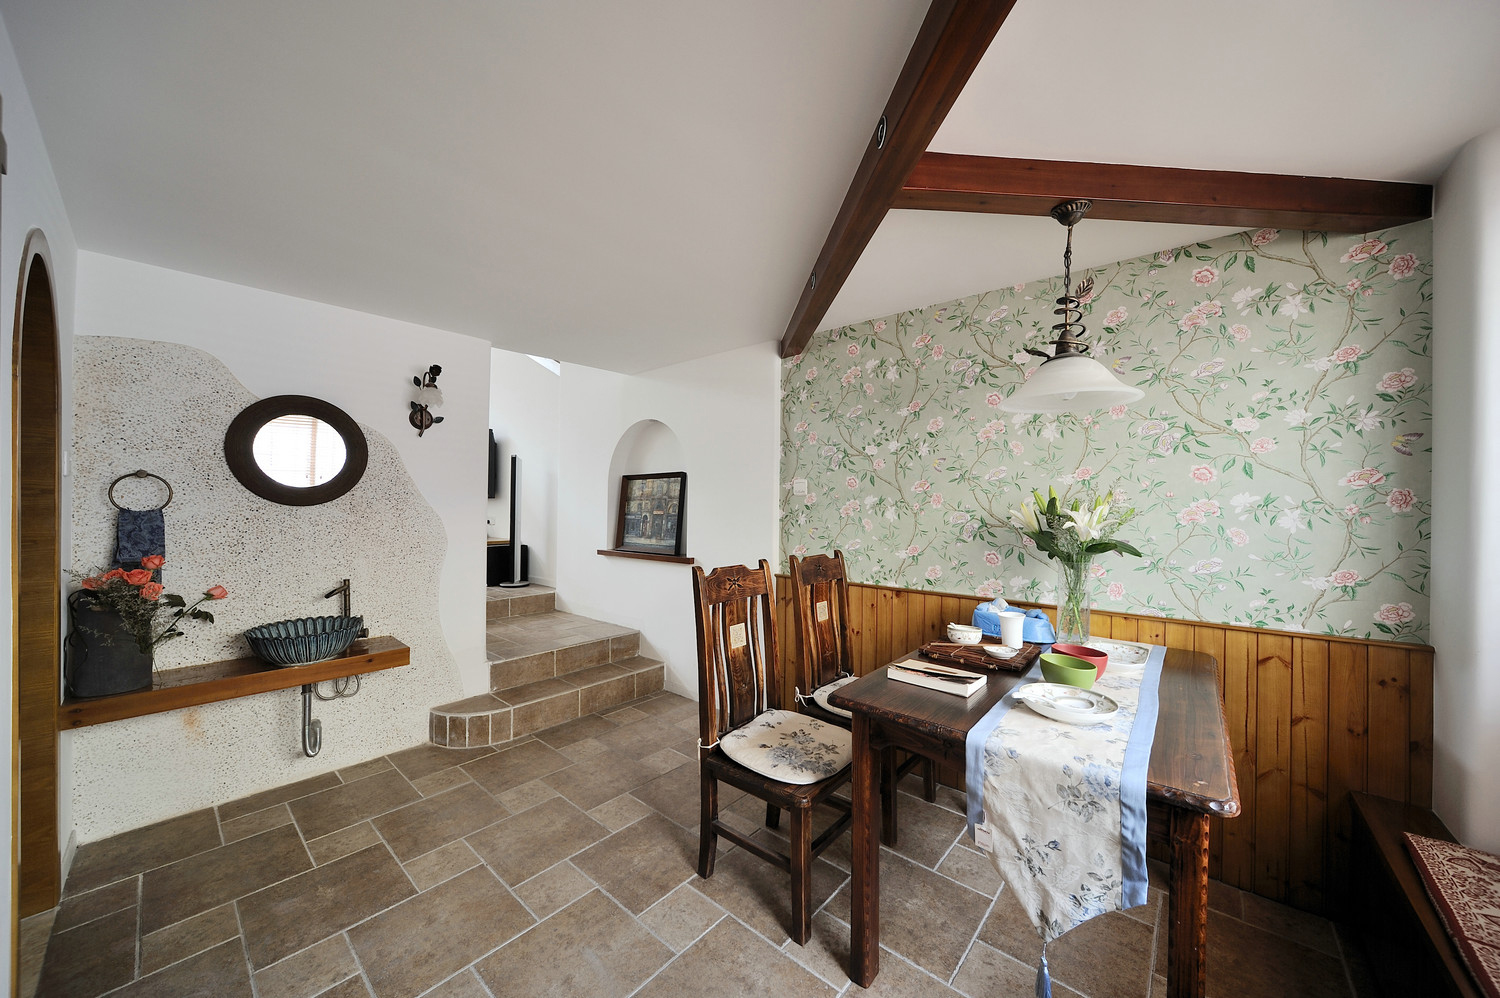 地中海特色及精致文化品位的家居设计方式，多适宜喜欢静谧与雅致、文化修养较高的成功人士。